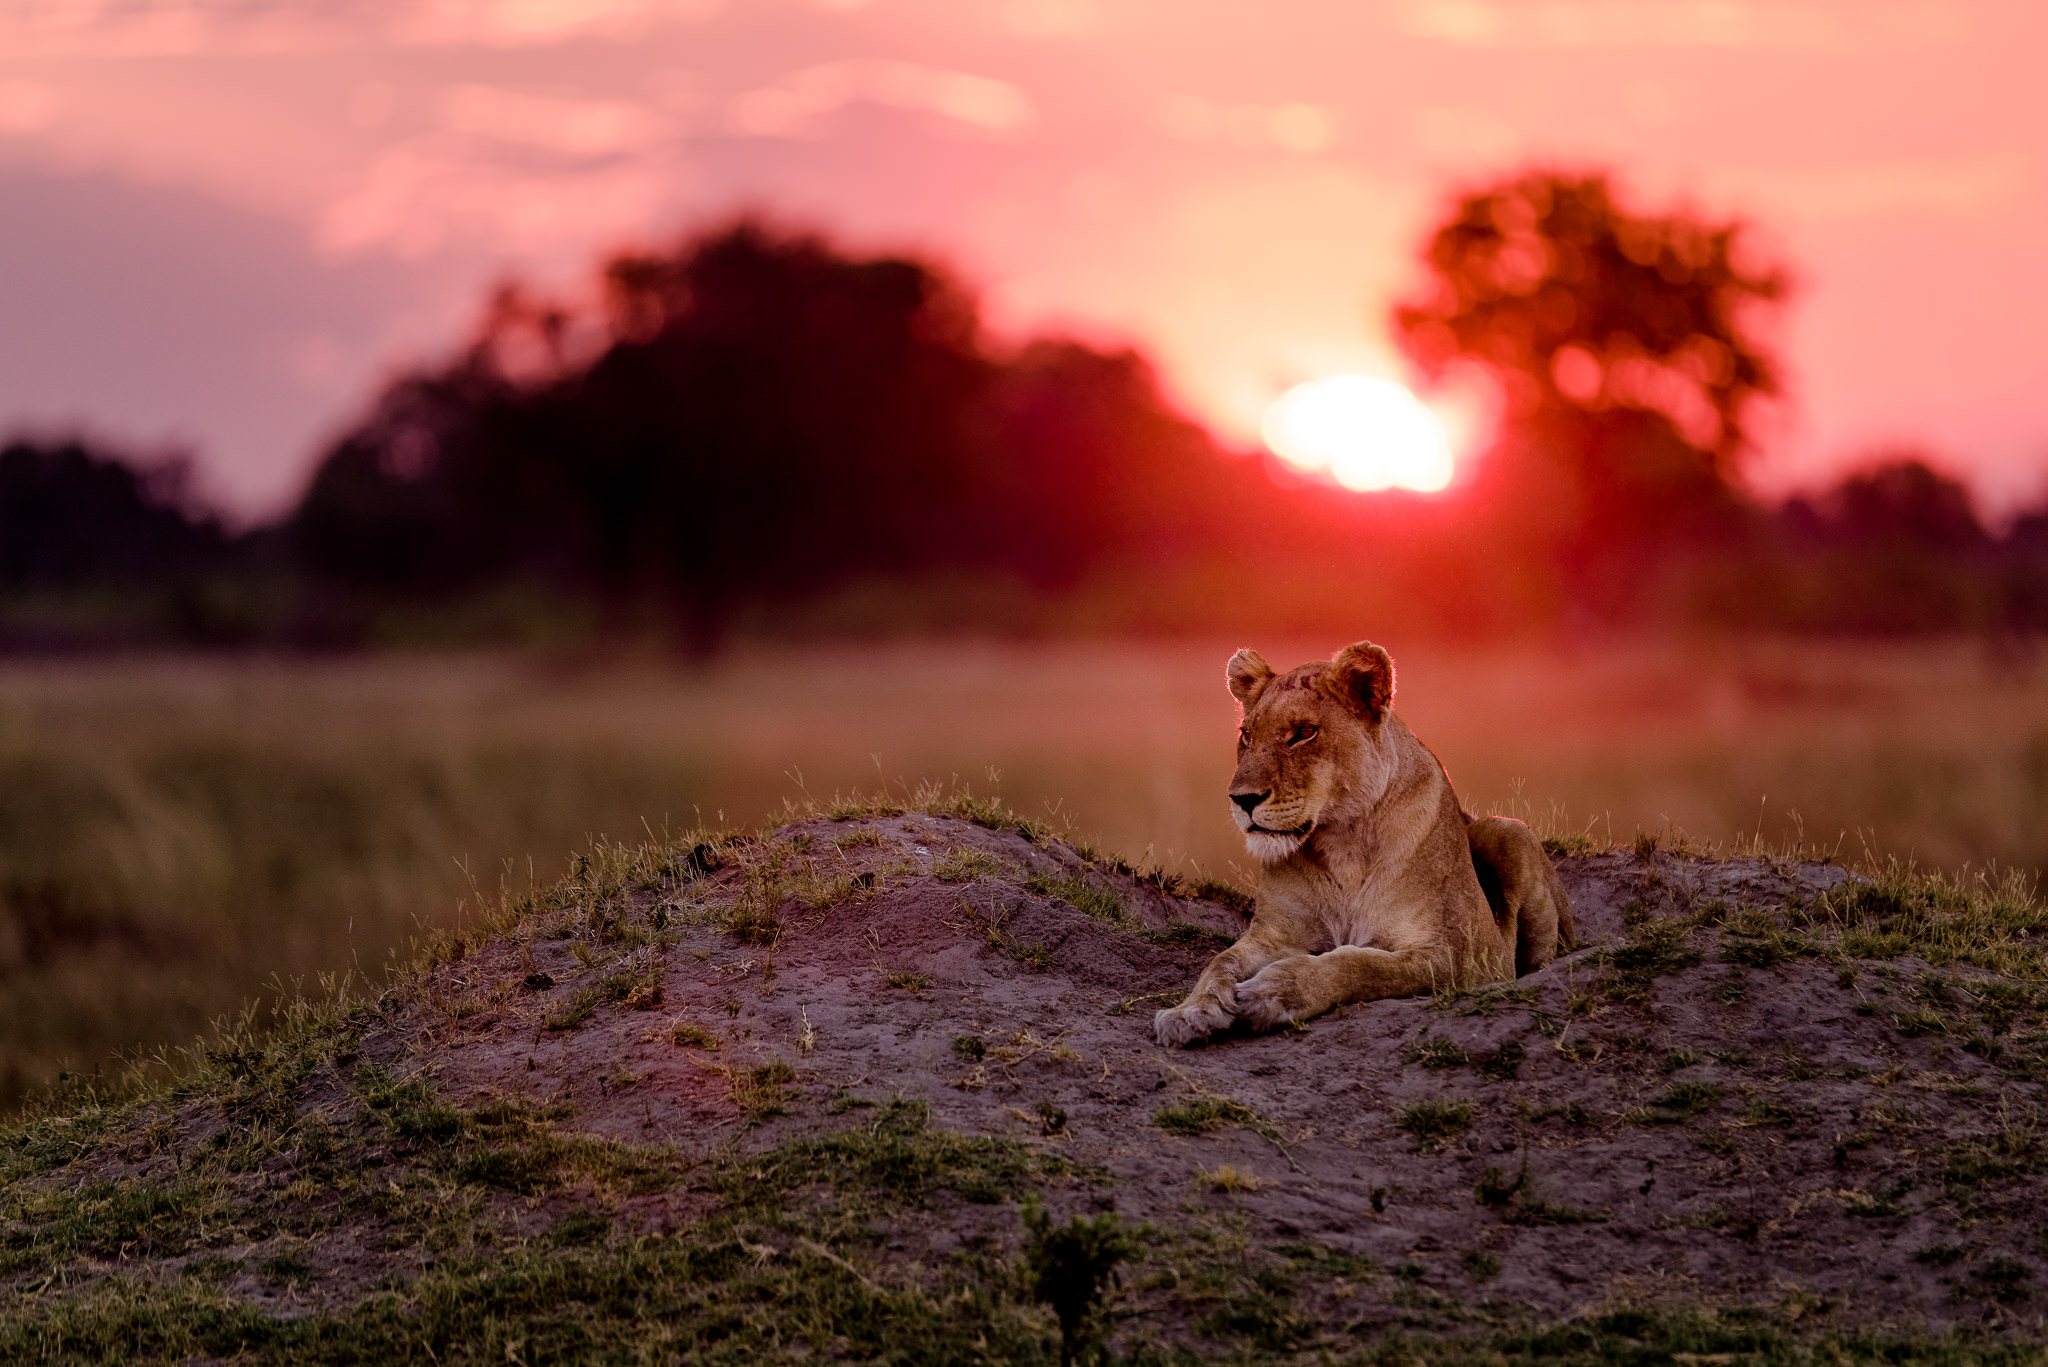 Lioness @ Sunset